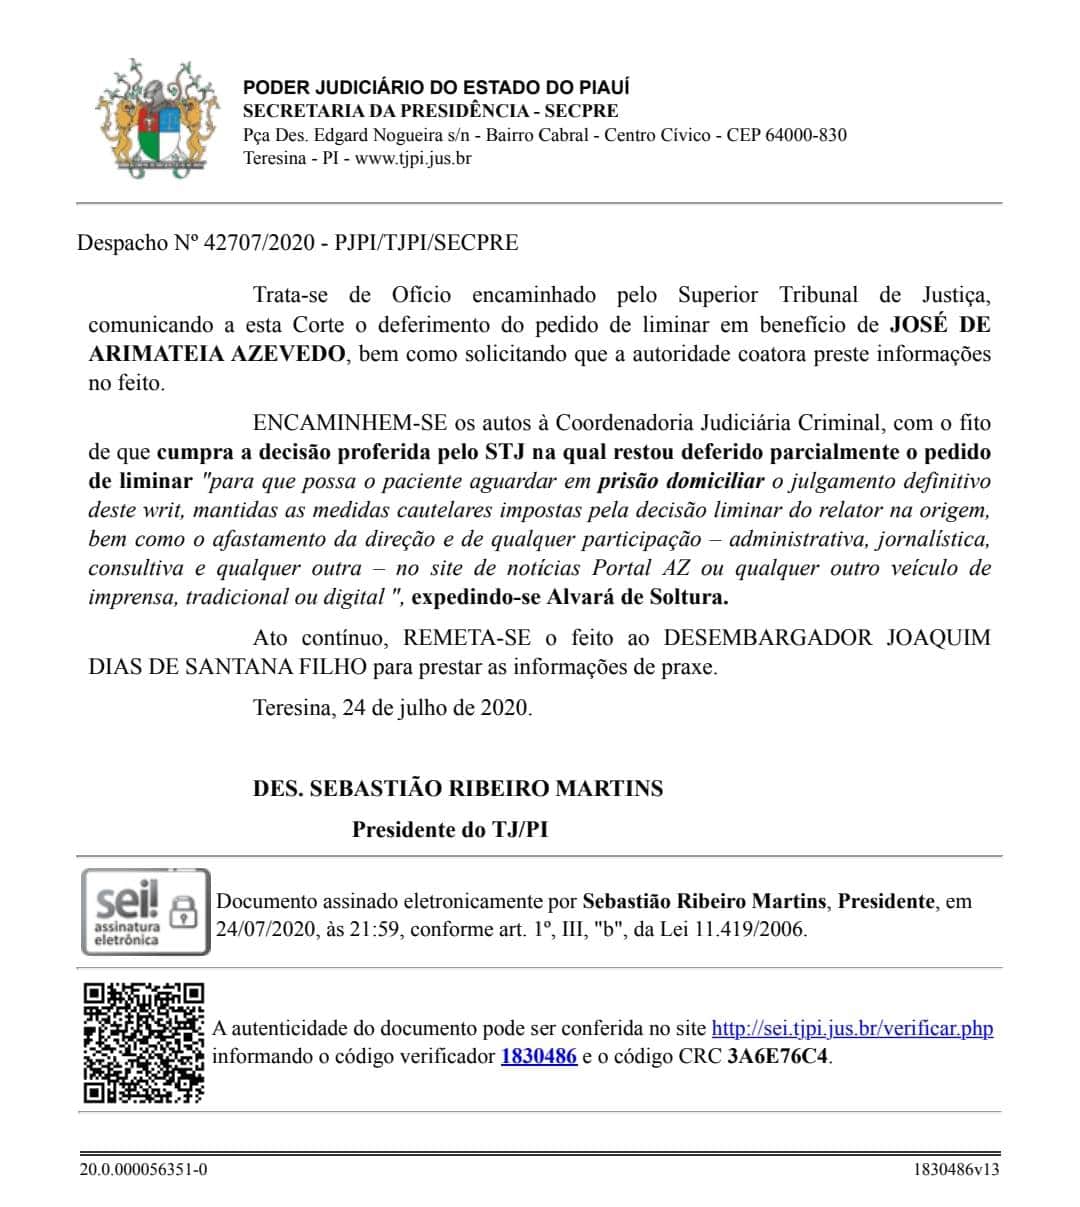 Decisão do Presidente Sebastião Ribeiro Martins manda cumprir ordem do STJ